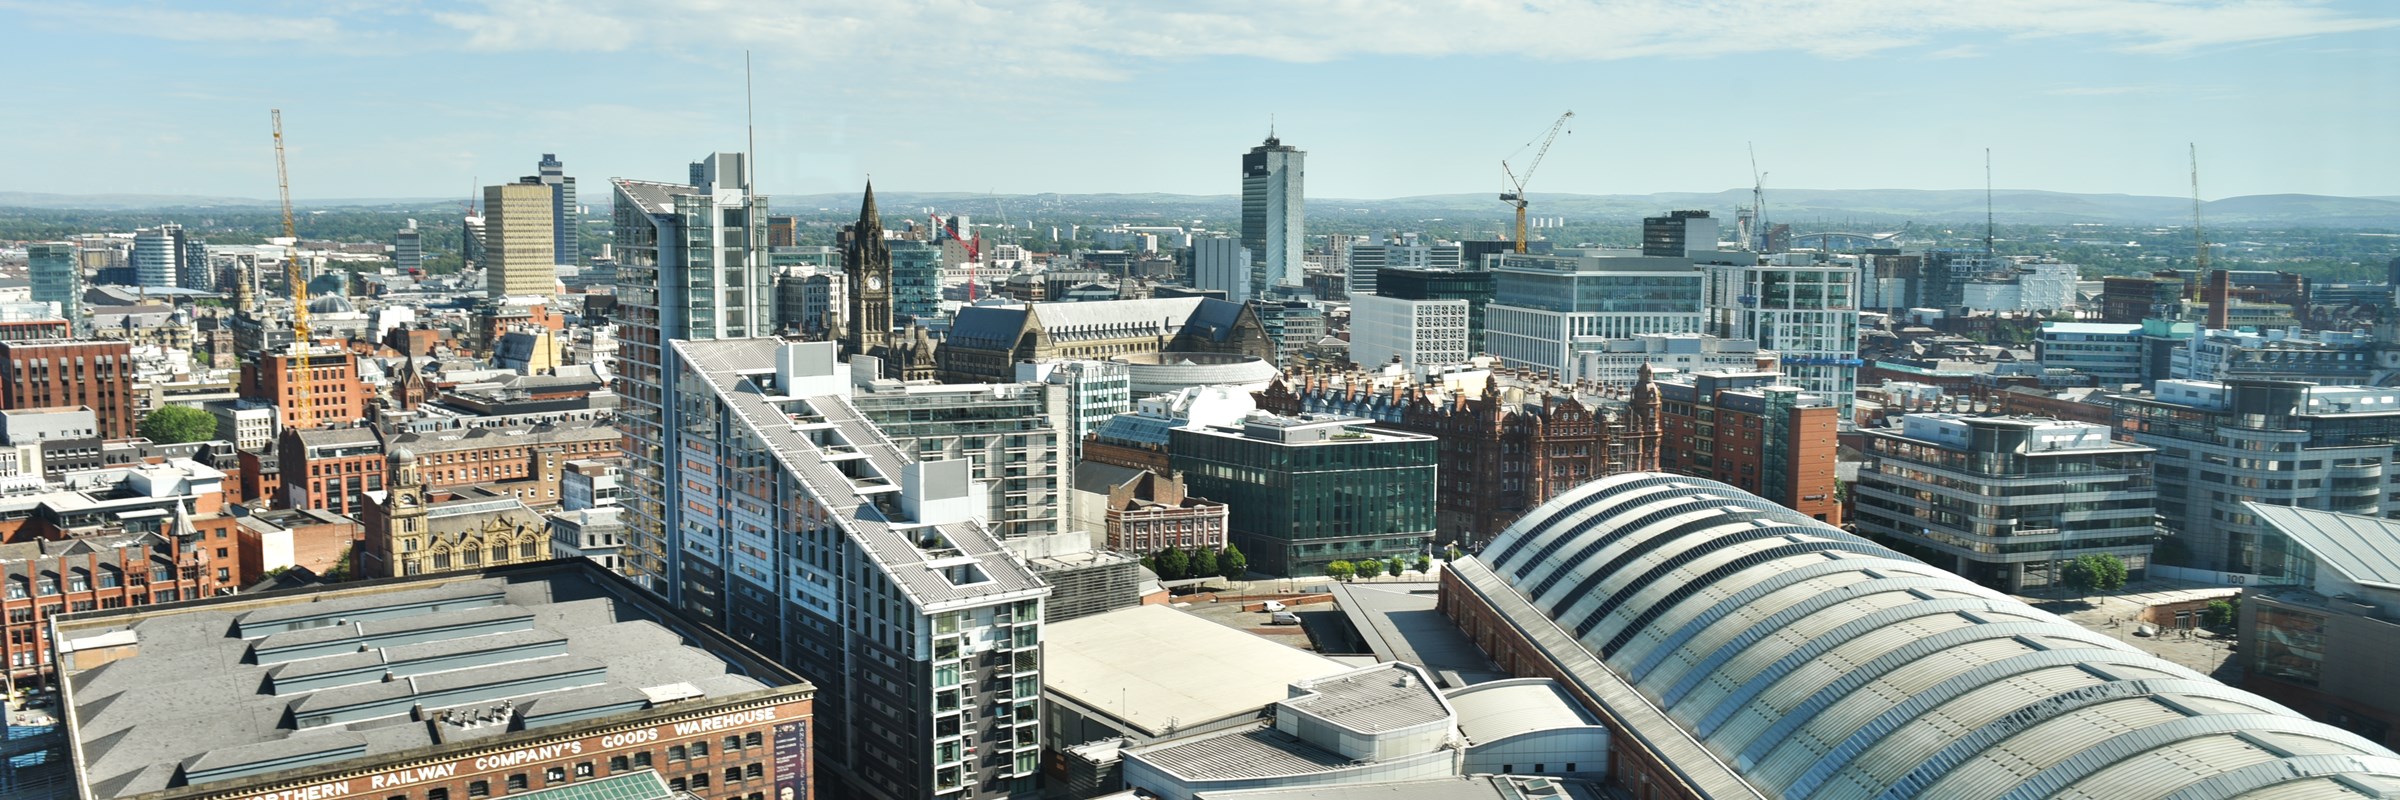 Manchester city centre landscape